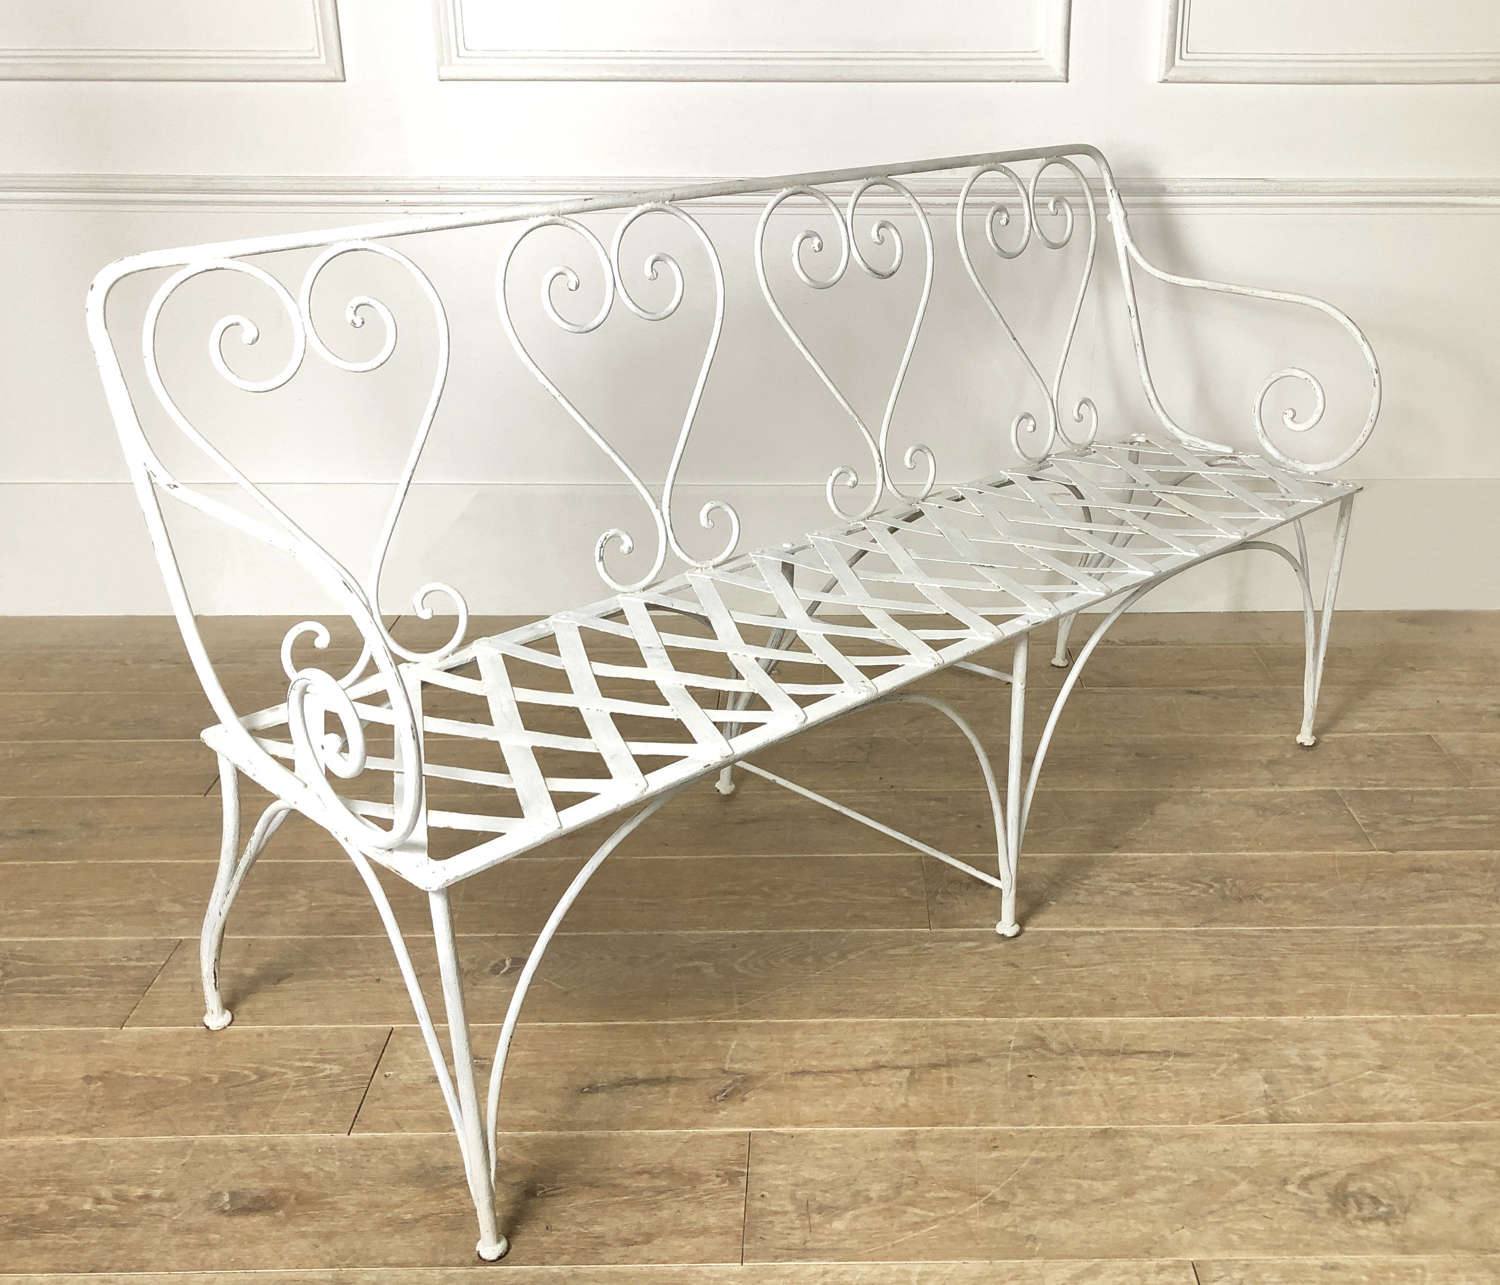 French 19th c White wrought iron Garden Seat with lattice iron seat